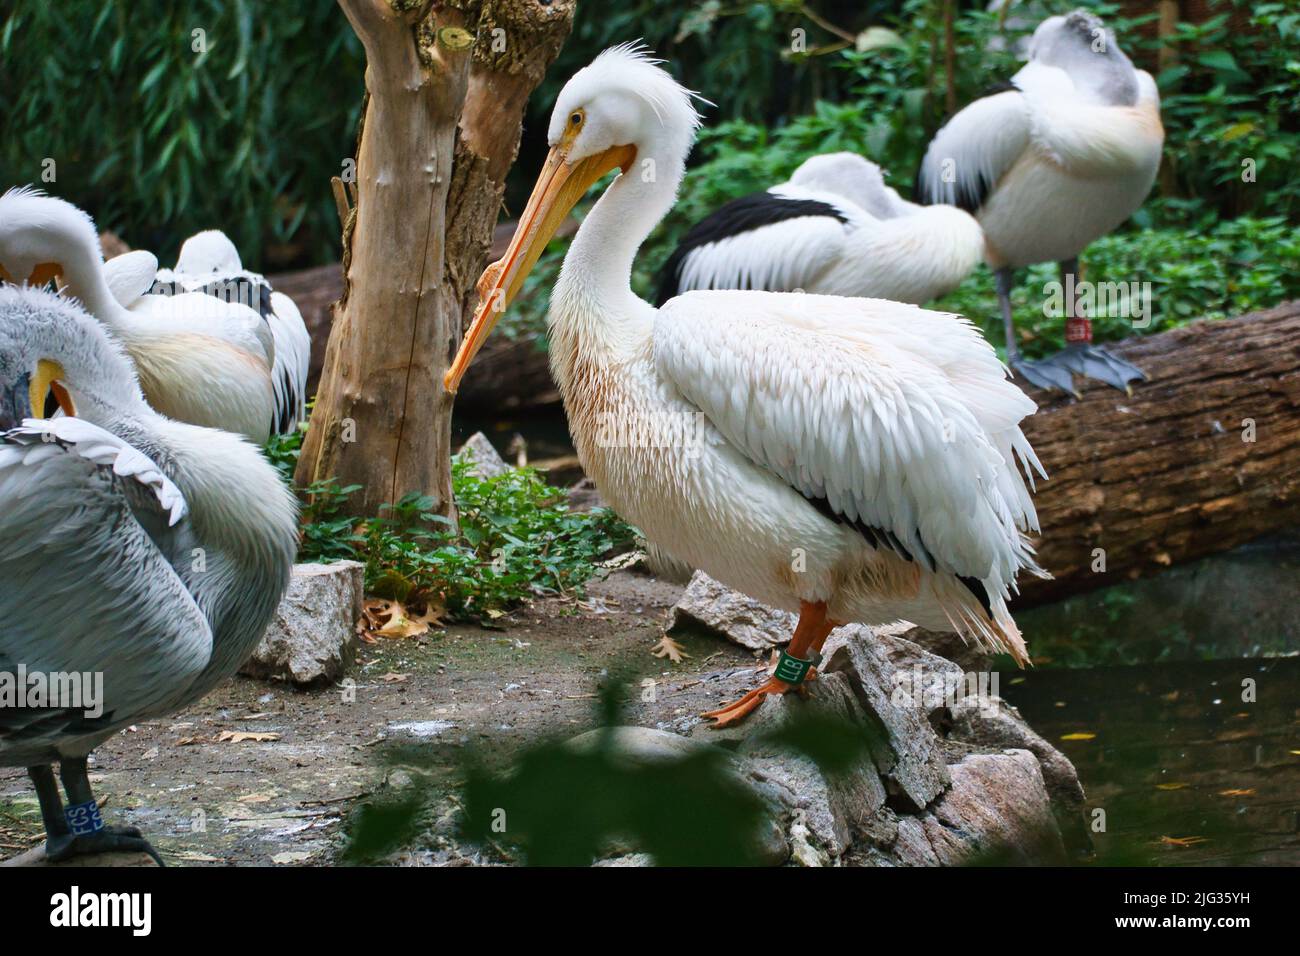 Pelican im Porträt. Weißes Gefieder, großer Schnabel, in einem großen Meeresvögel. Tierfoto Stockfoto